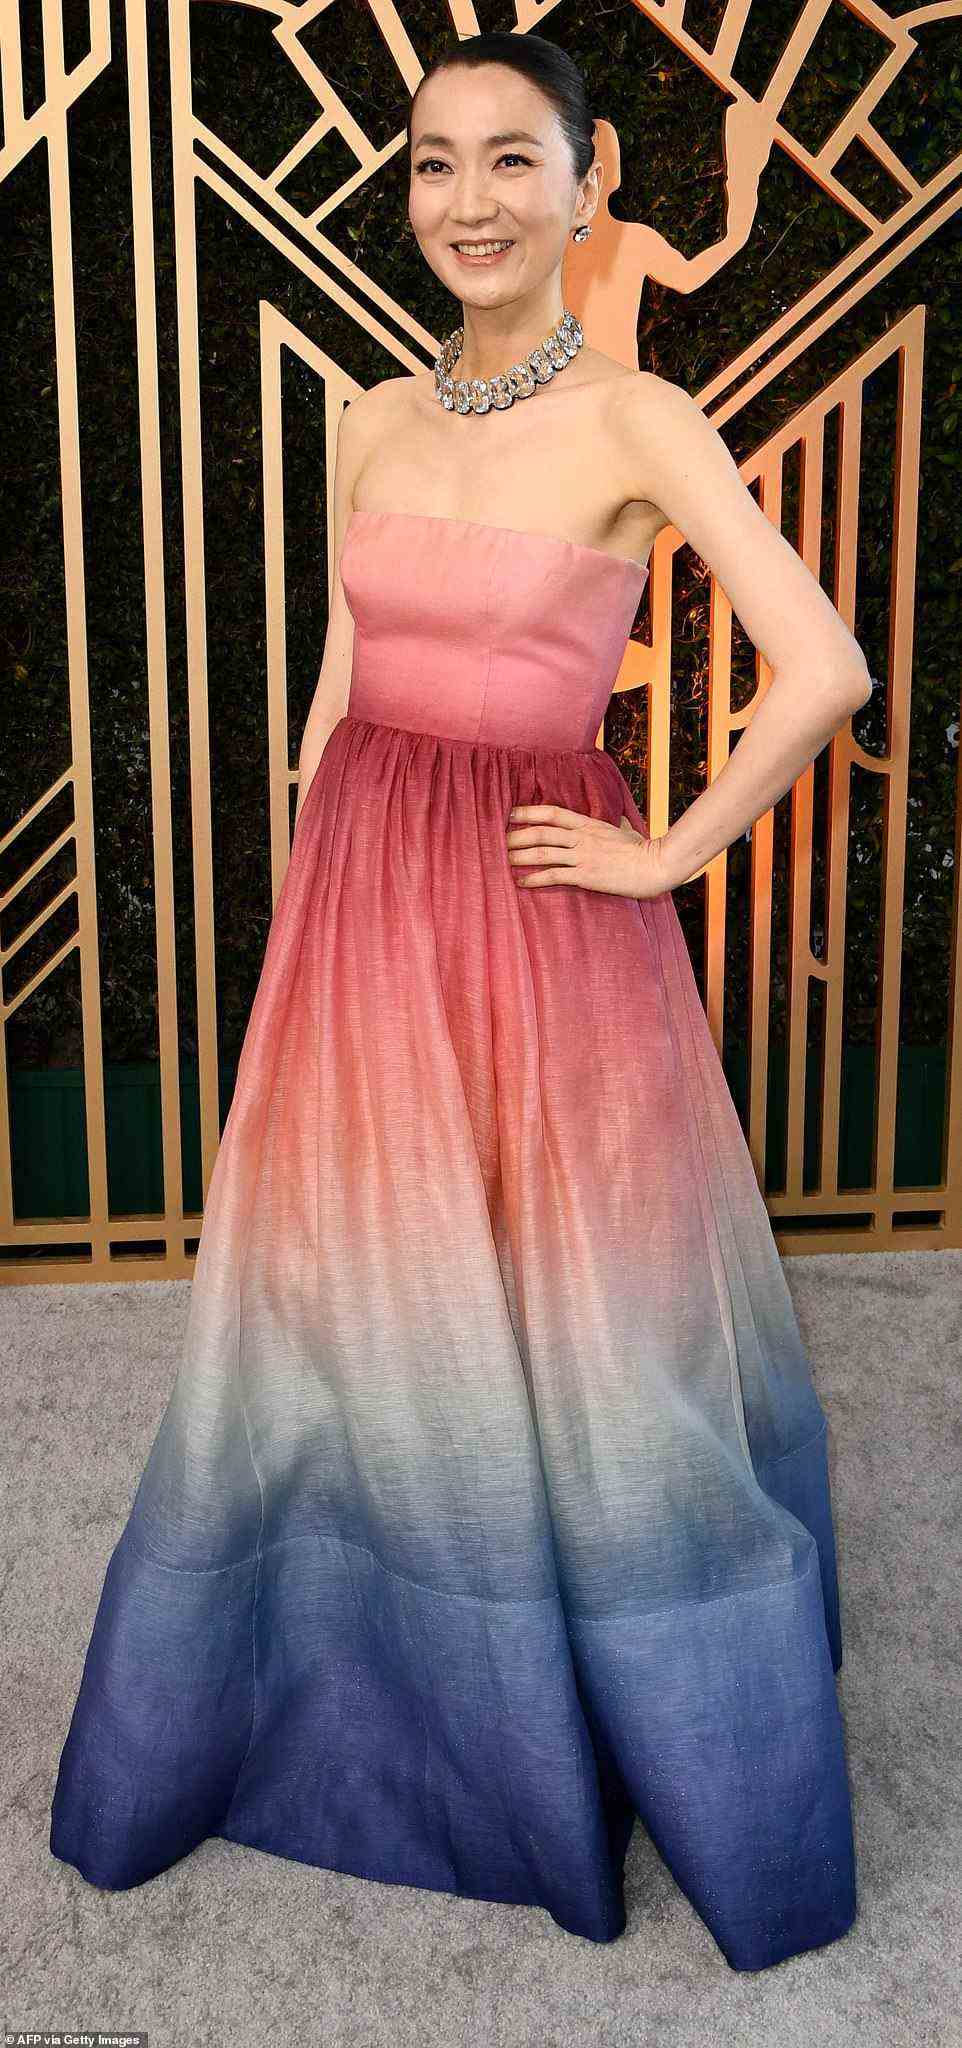 Die südkoreanische Schauspielerin Kim Joo-ryoung, die für ihre Rolle in den Squid Games bekannt ist, führte die Liste der am schlechtesten angezogenen in einem auffälligen Kleid in Rosa, Weiß und Blau an.  Ihre Farbwahl sorgte dafür, dass alle Blicke auf sie gerichtet waren